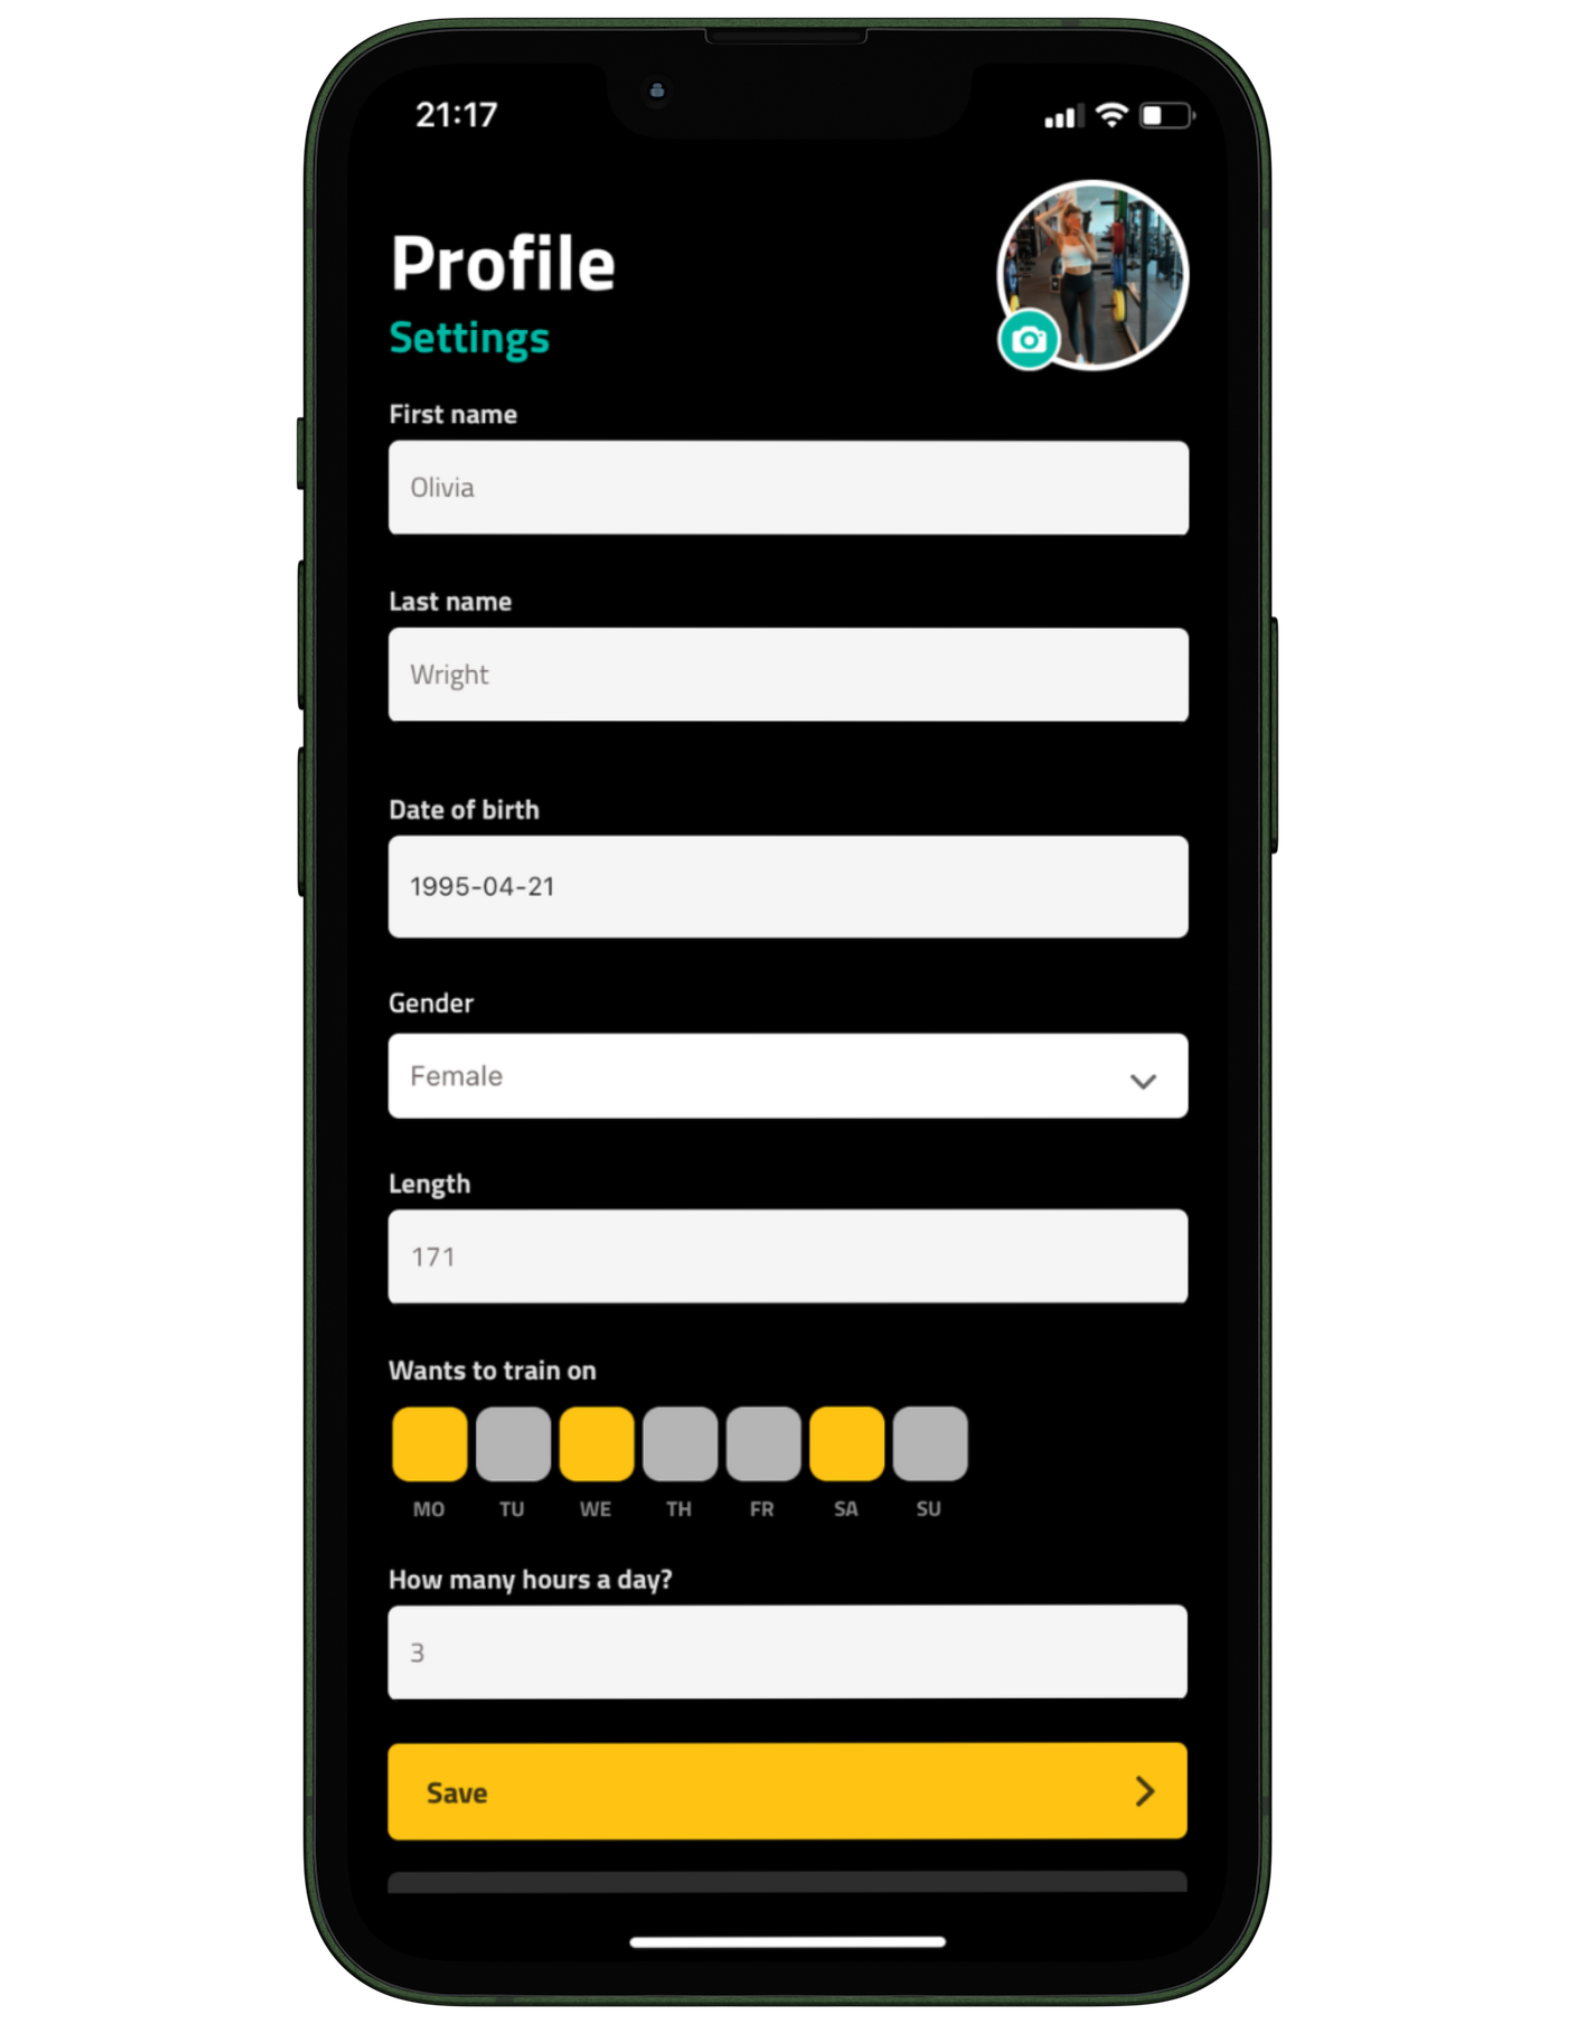 Client profile